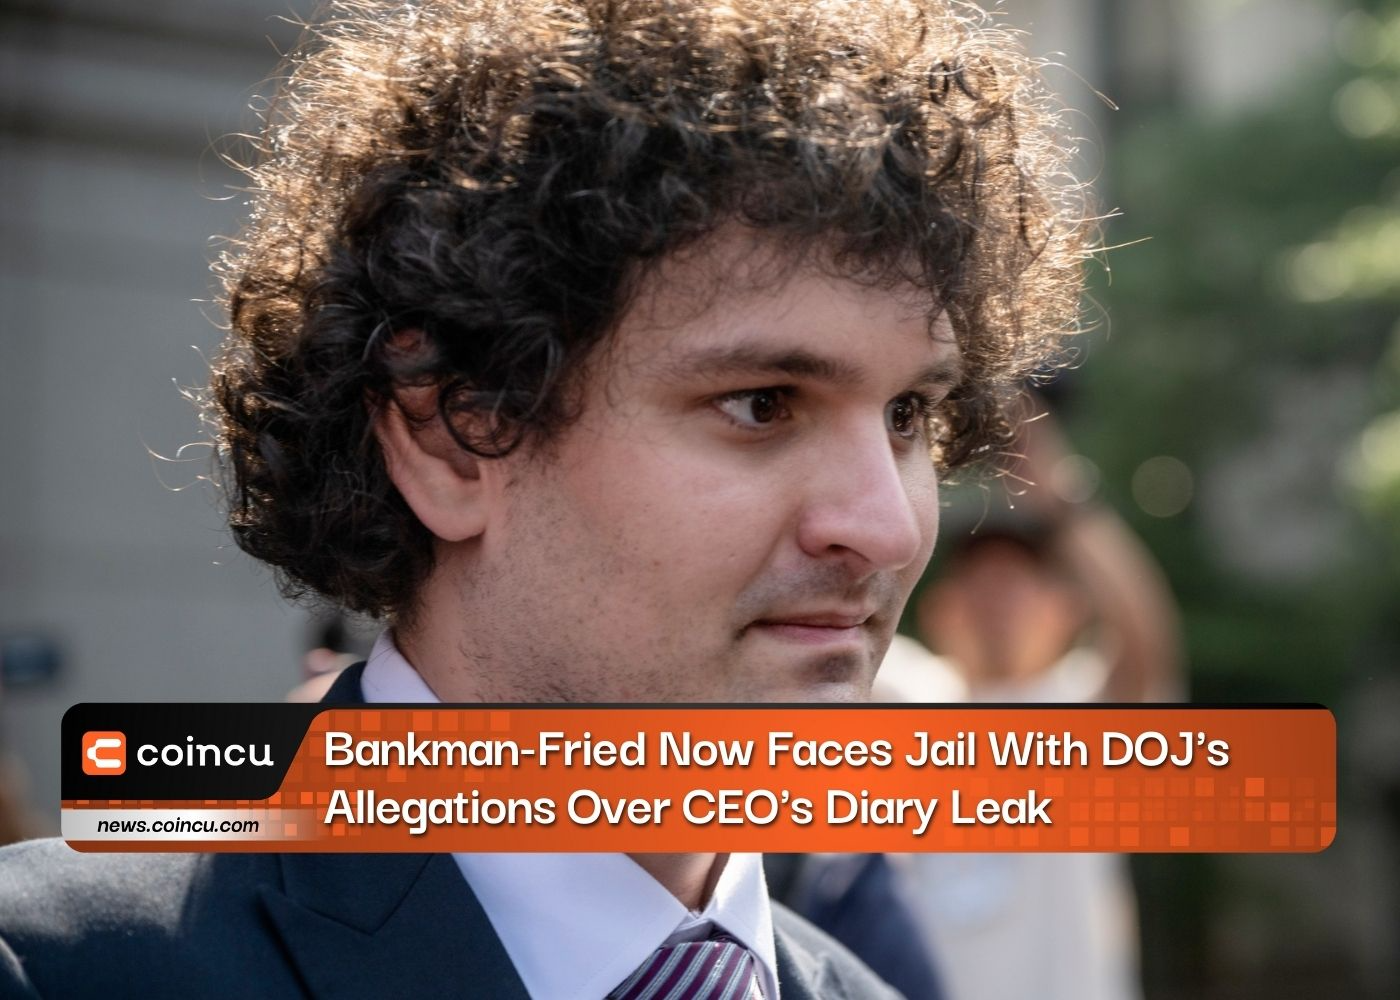 Bankman-Fried hiện phải đối mặt với án tù với cáo buộc của DOJ về vụ rò rỉ nhật ký của CEO